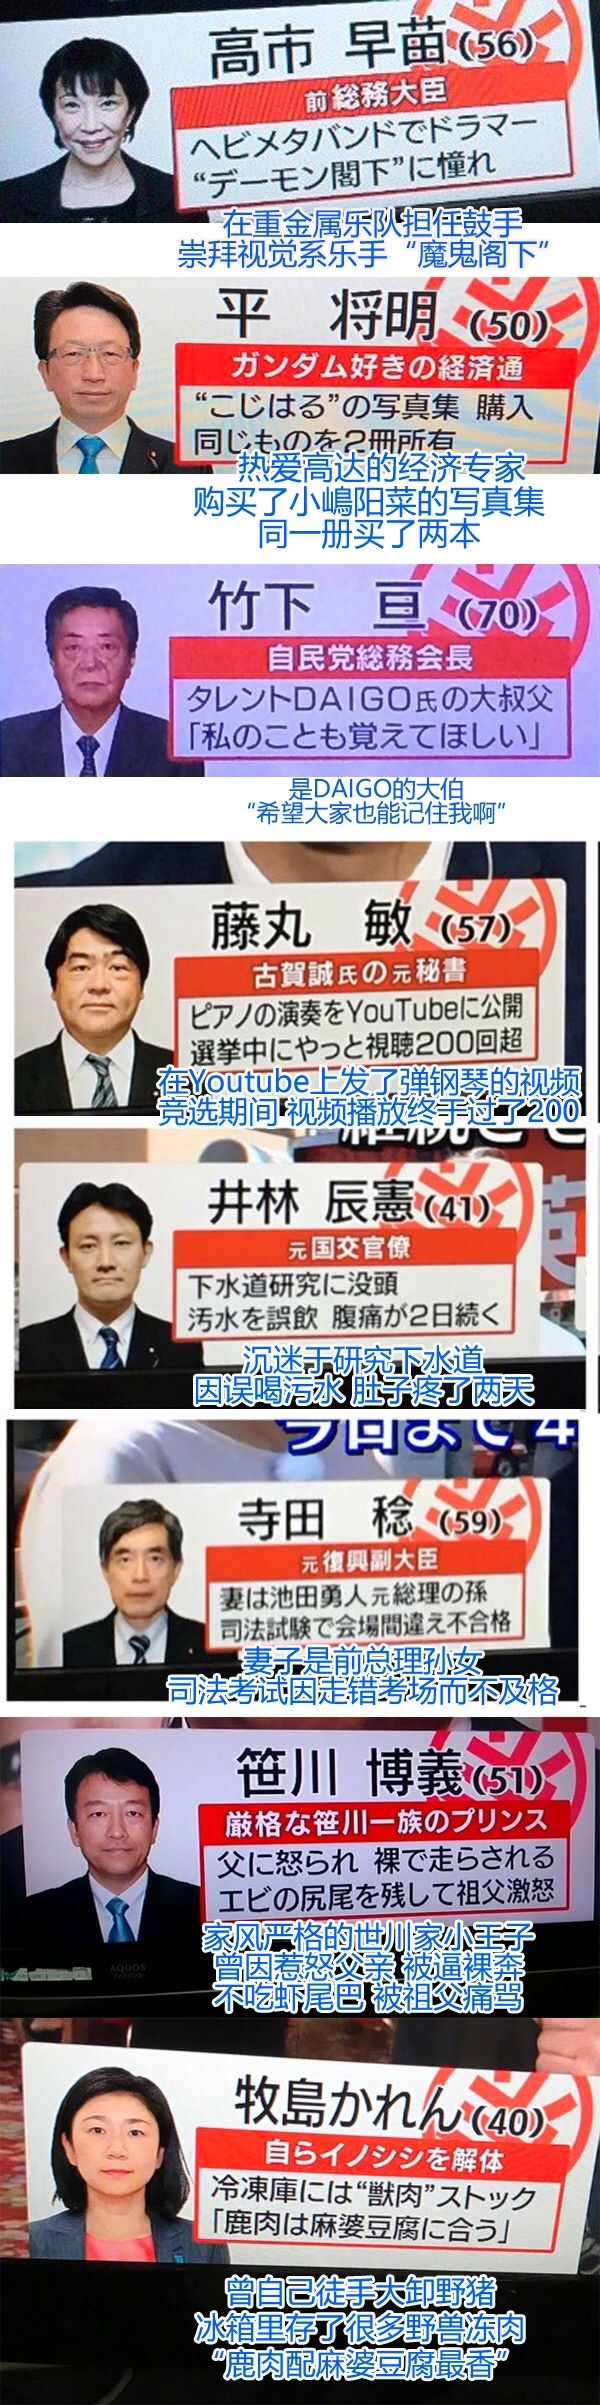 今晚岛国大选开票，东京电视台一如既往走位风骚